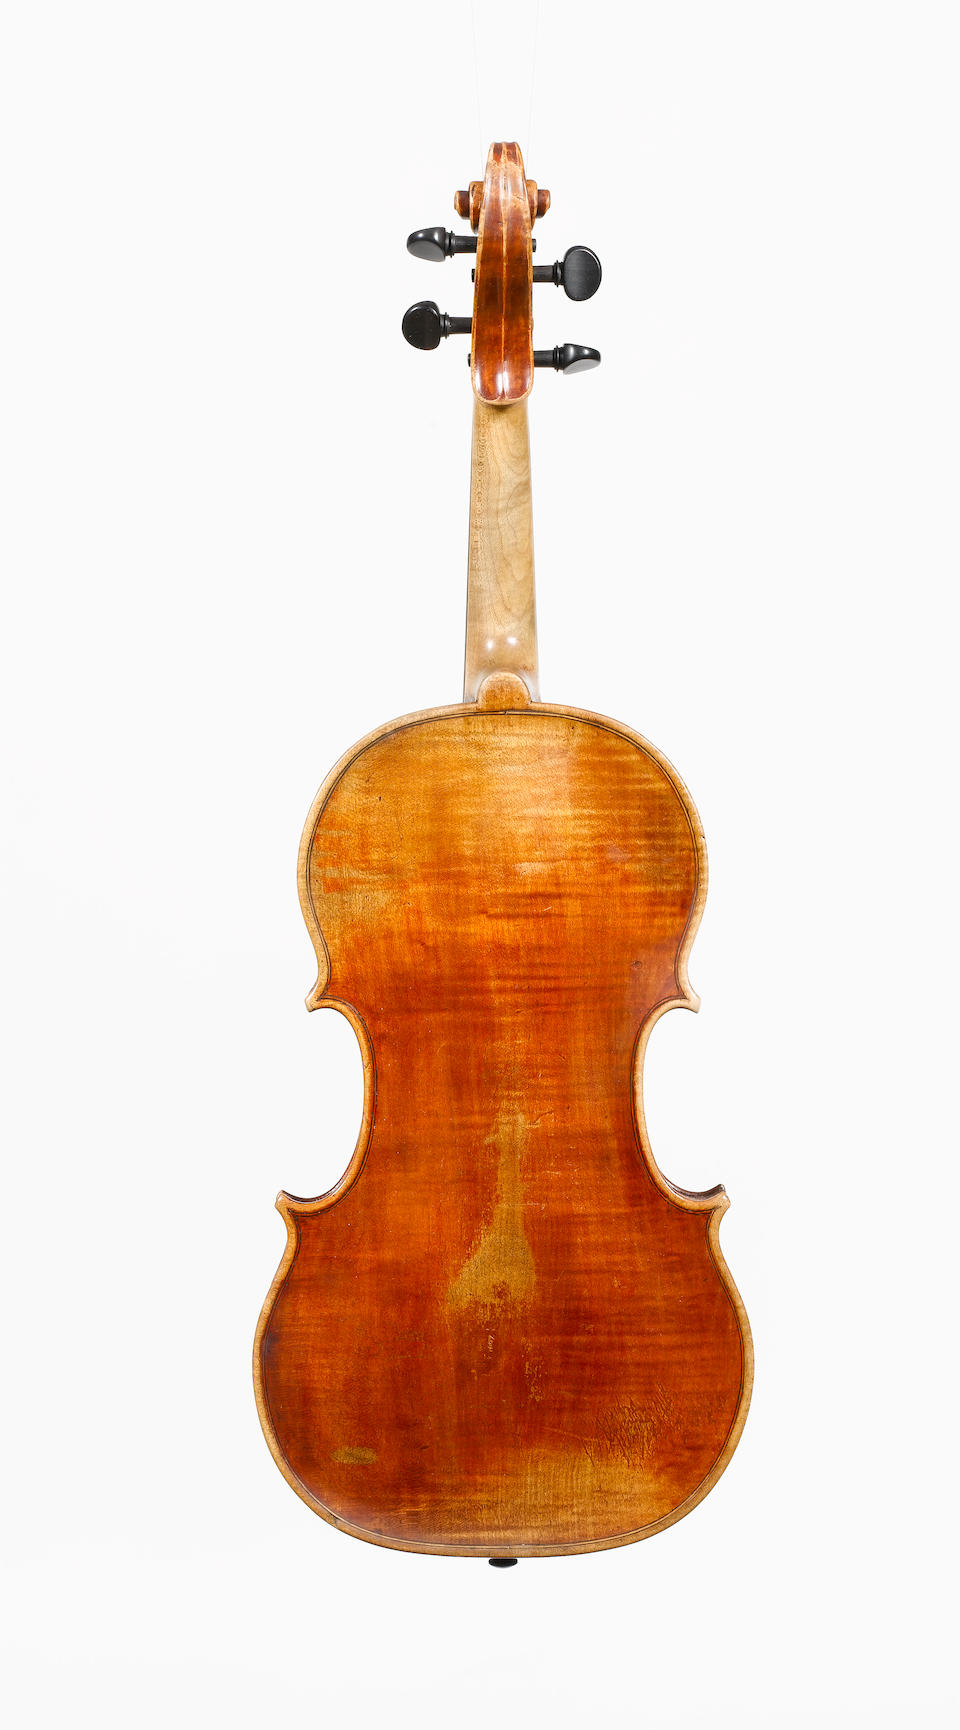 A very fine English Viola by Benjamin Banks, Salisbury circa 1780